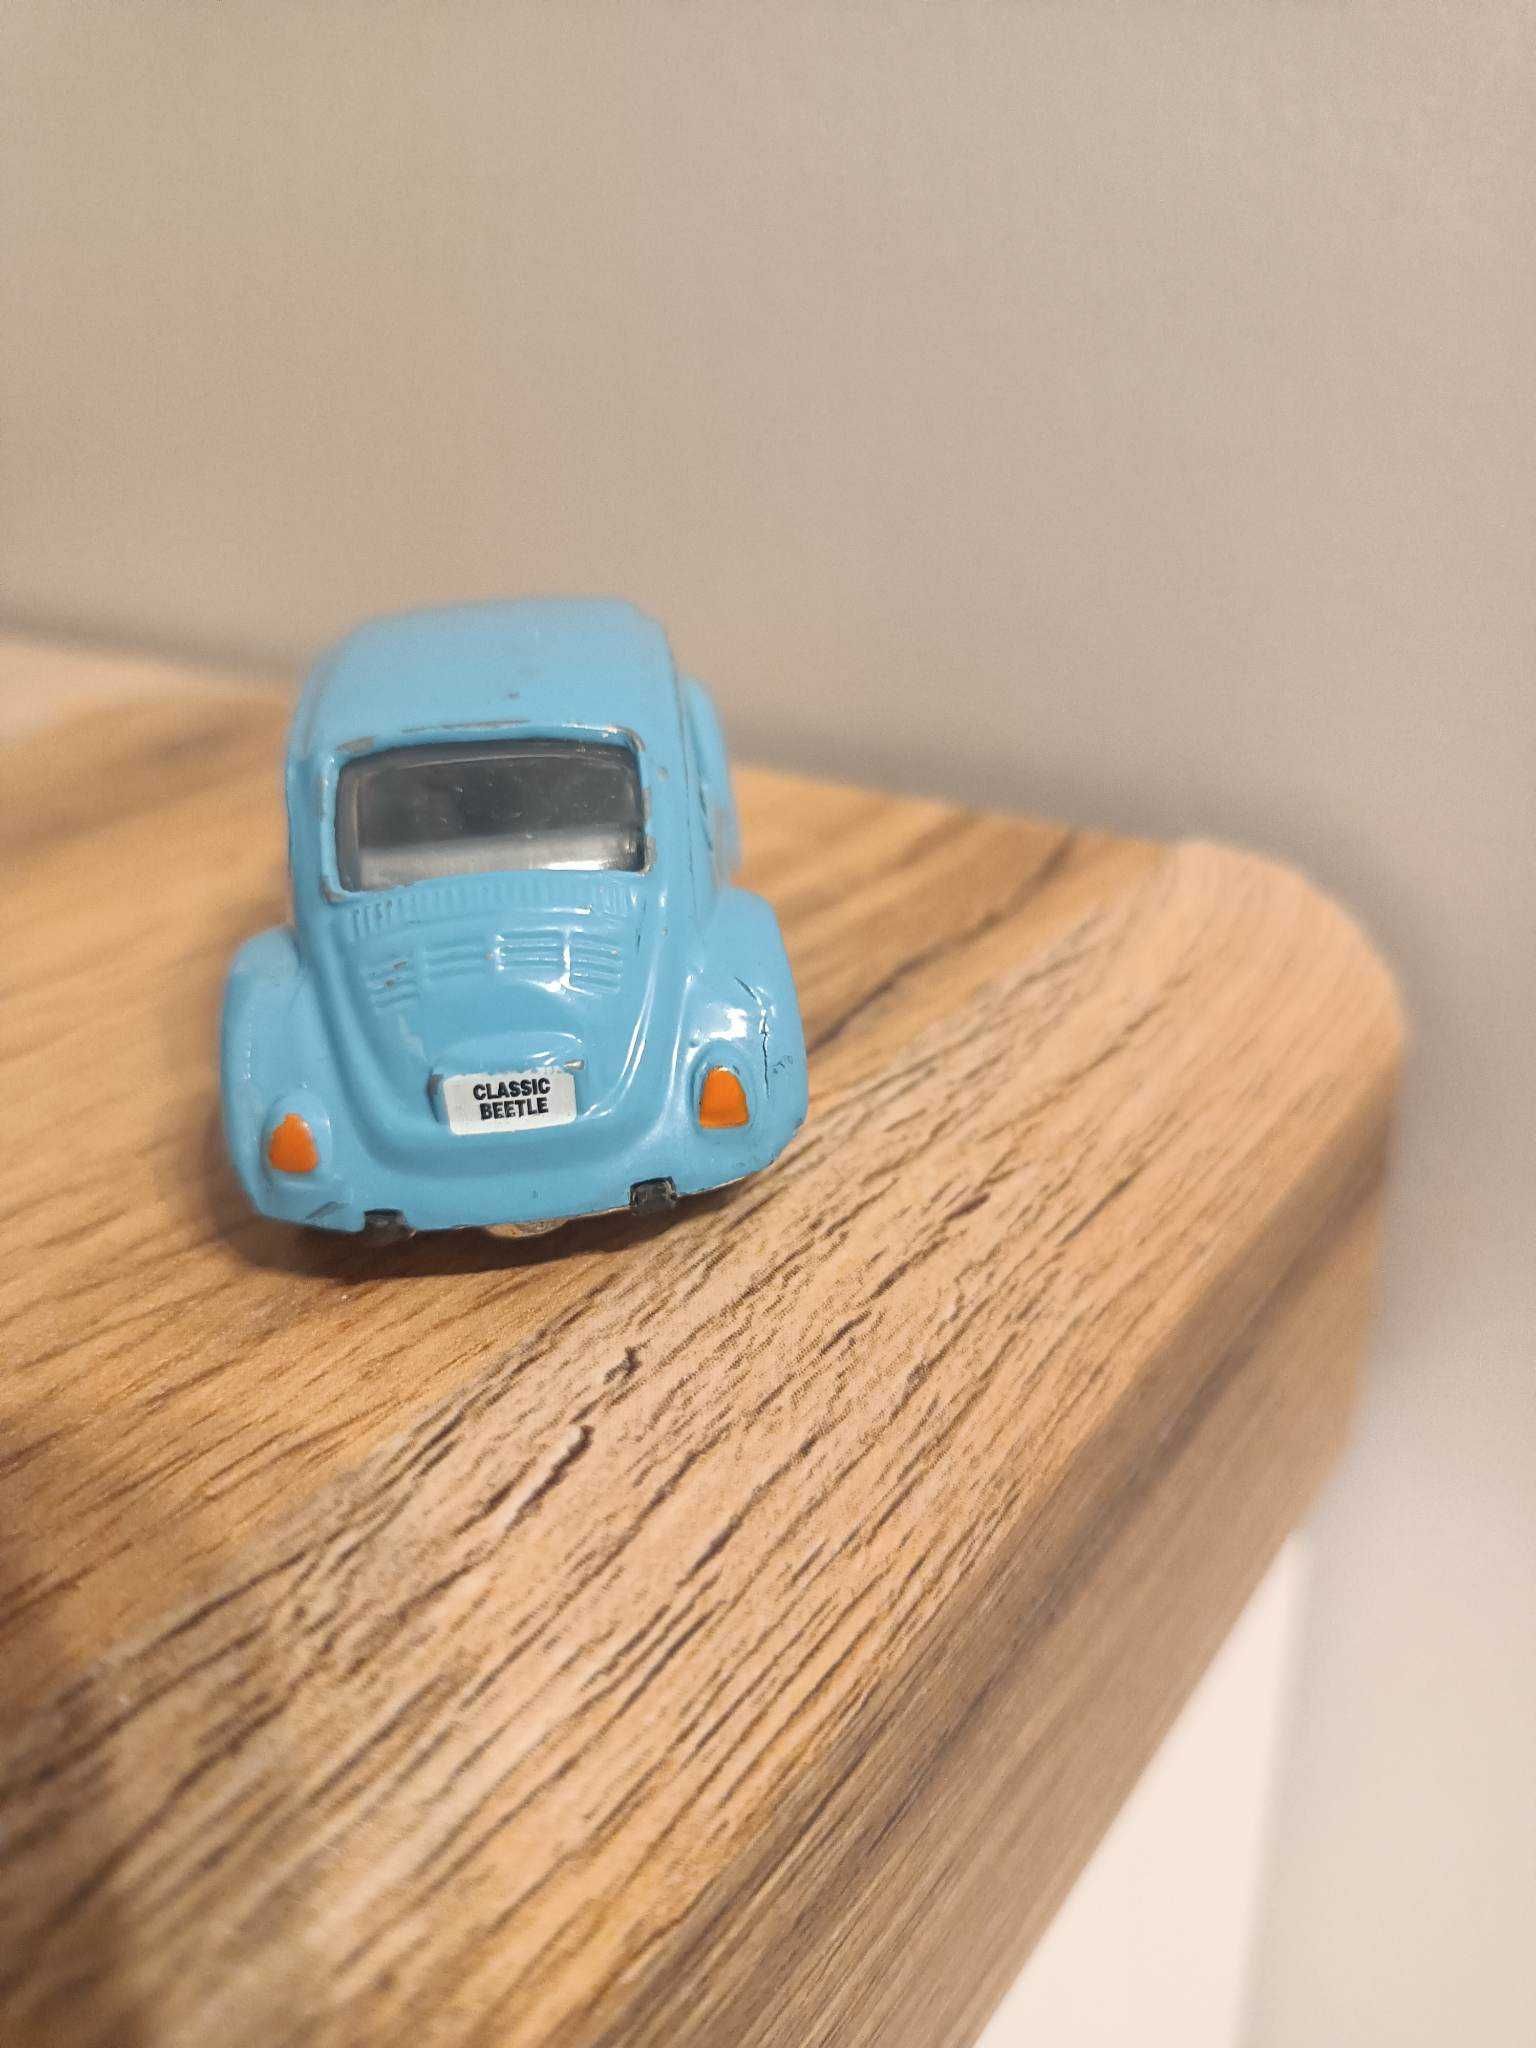 VW Classic Beetle Realtoy, niebieski